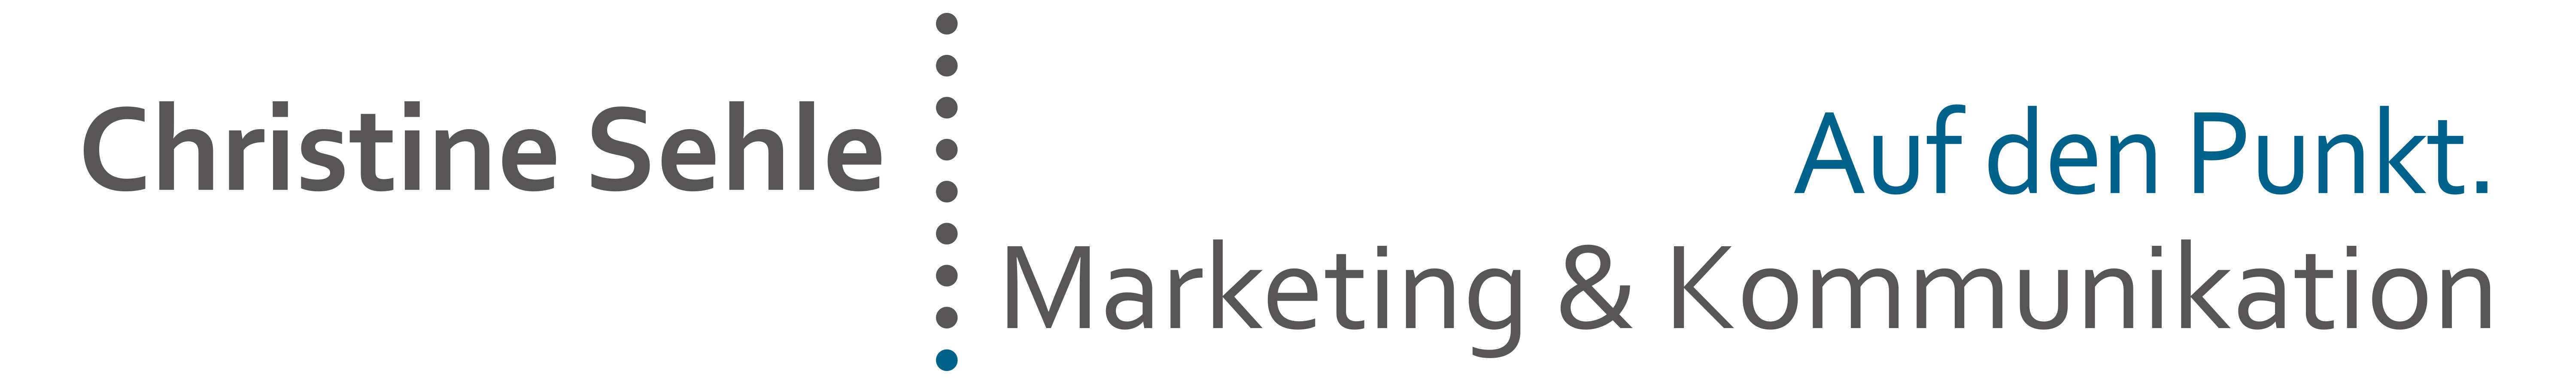 Logo von Christine Sehle - Marketing & Kommunikation Auf den Punkt Christine